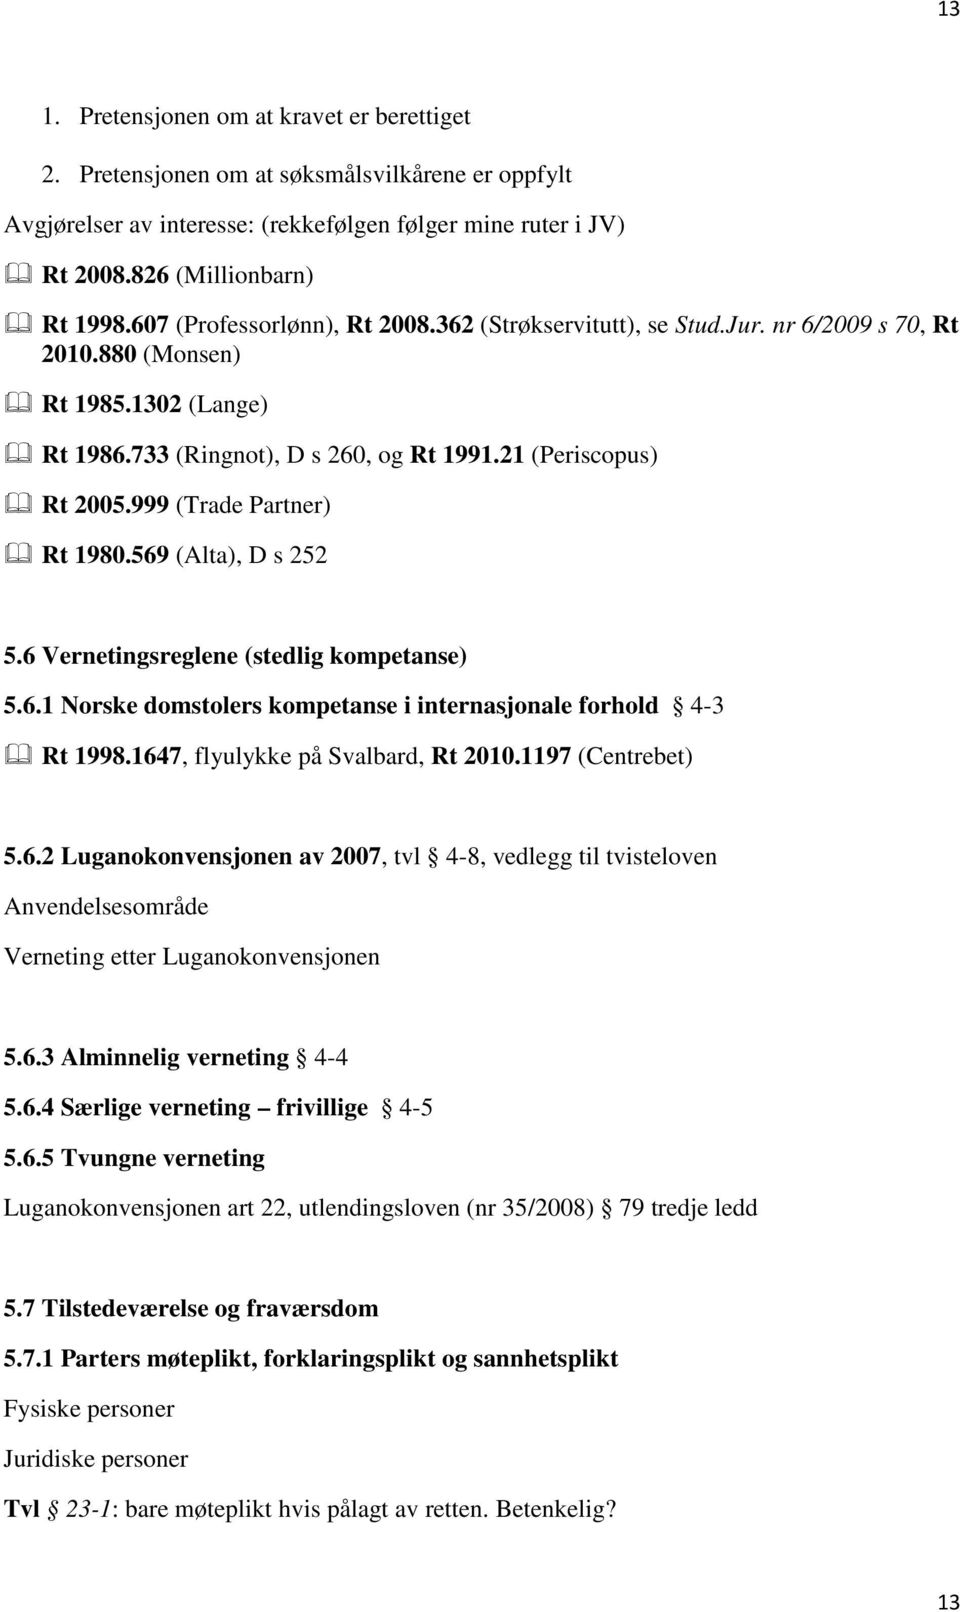 999 (Trade Partner) Rt 1980.569 (Alta), D s 252 5.6 Vernetingsreglene (stedlig kompetanse) 5.6.1 Norske domstolers kompetanse i internasjonale forhold 4-3 Rt 1998.1647, flyulykke på Svalbard, Rt 2010.